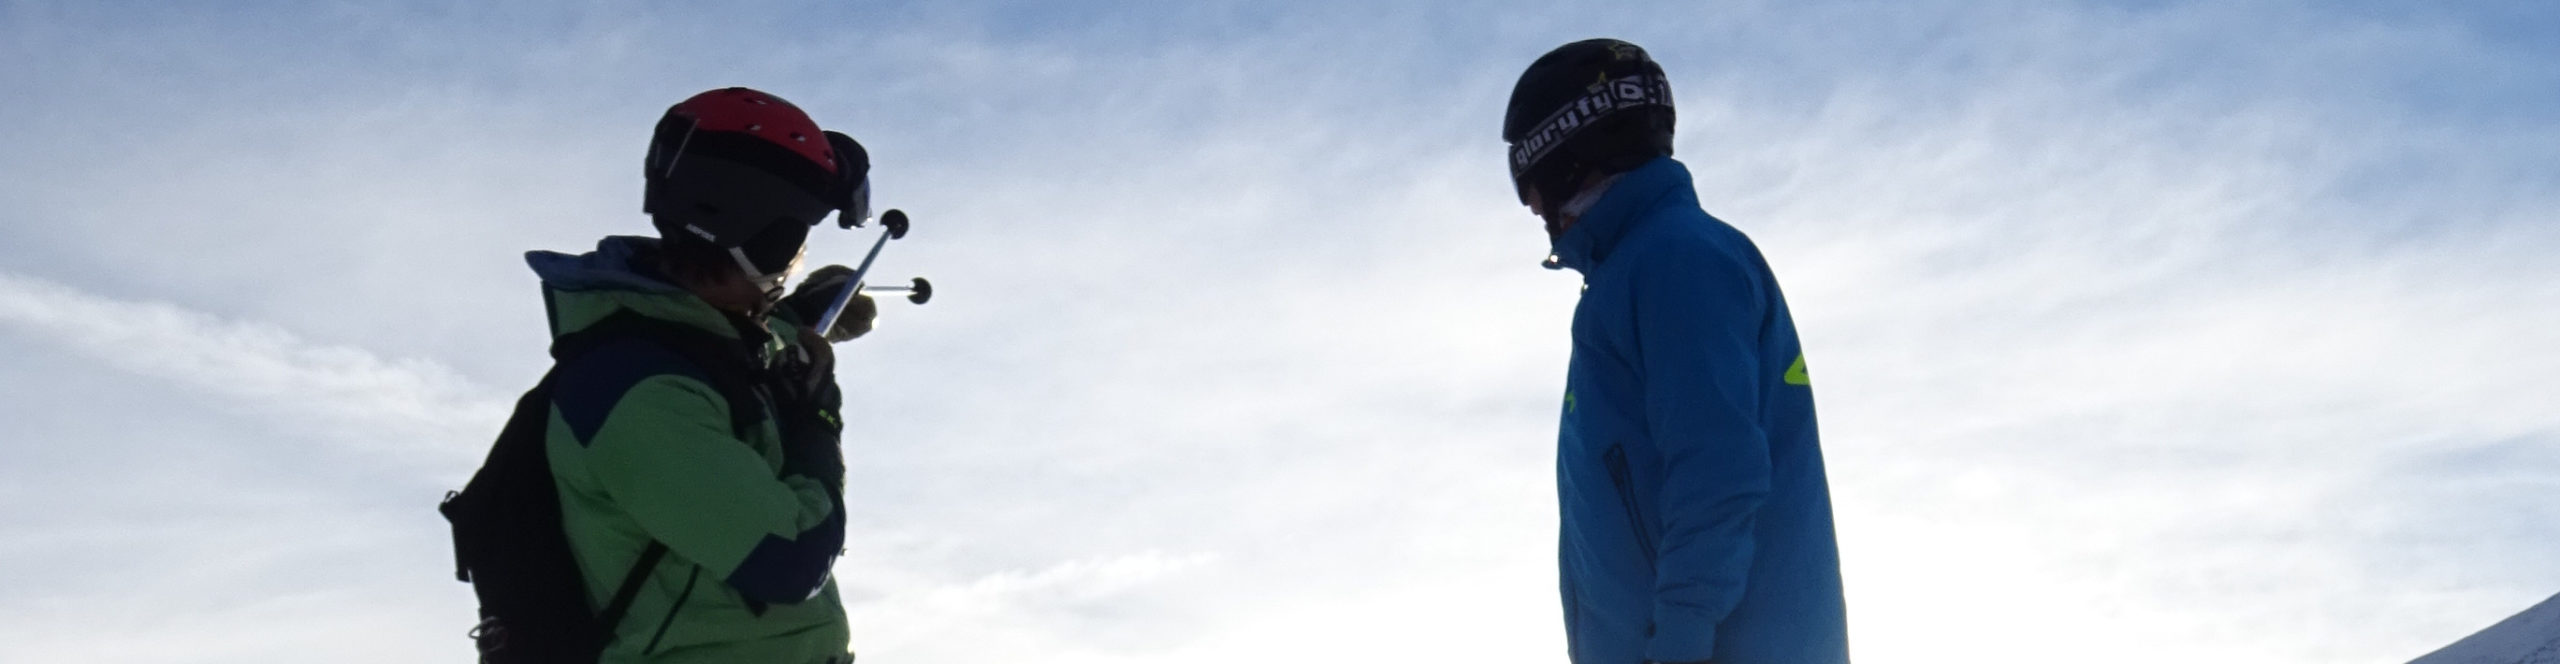 SERFAUS – FISS – LADIS – SchneeSPARTag inkl. Skipass – Guter Schnee zu gutem Preis!!! 